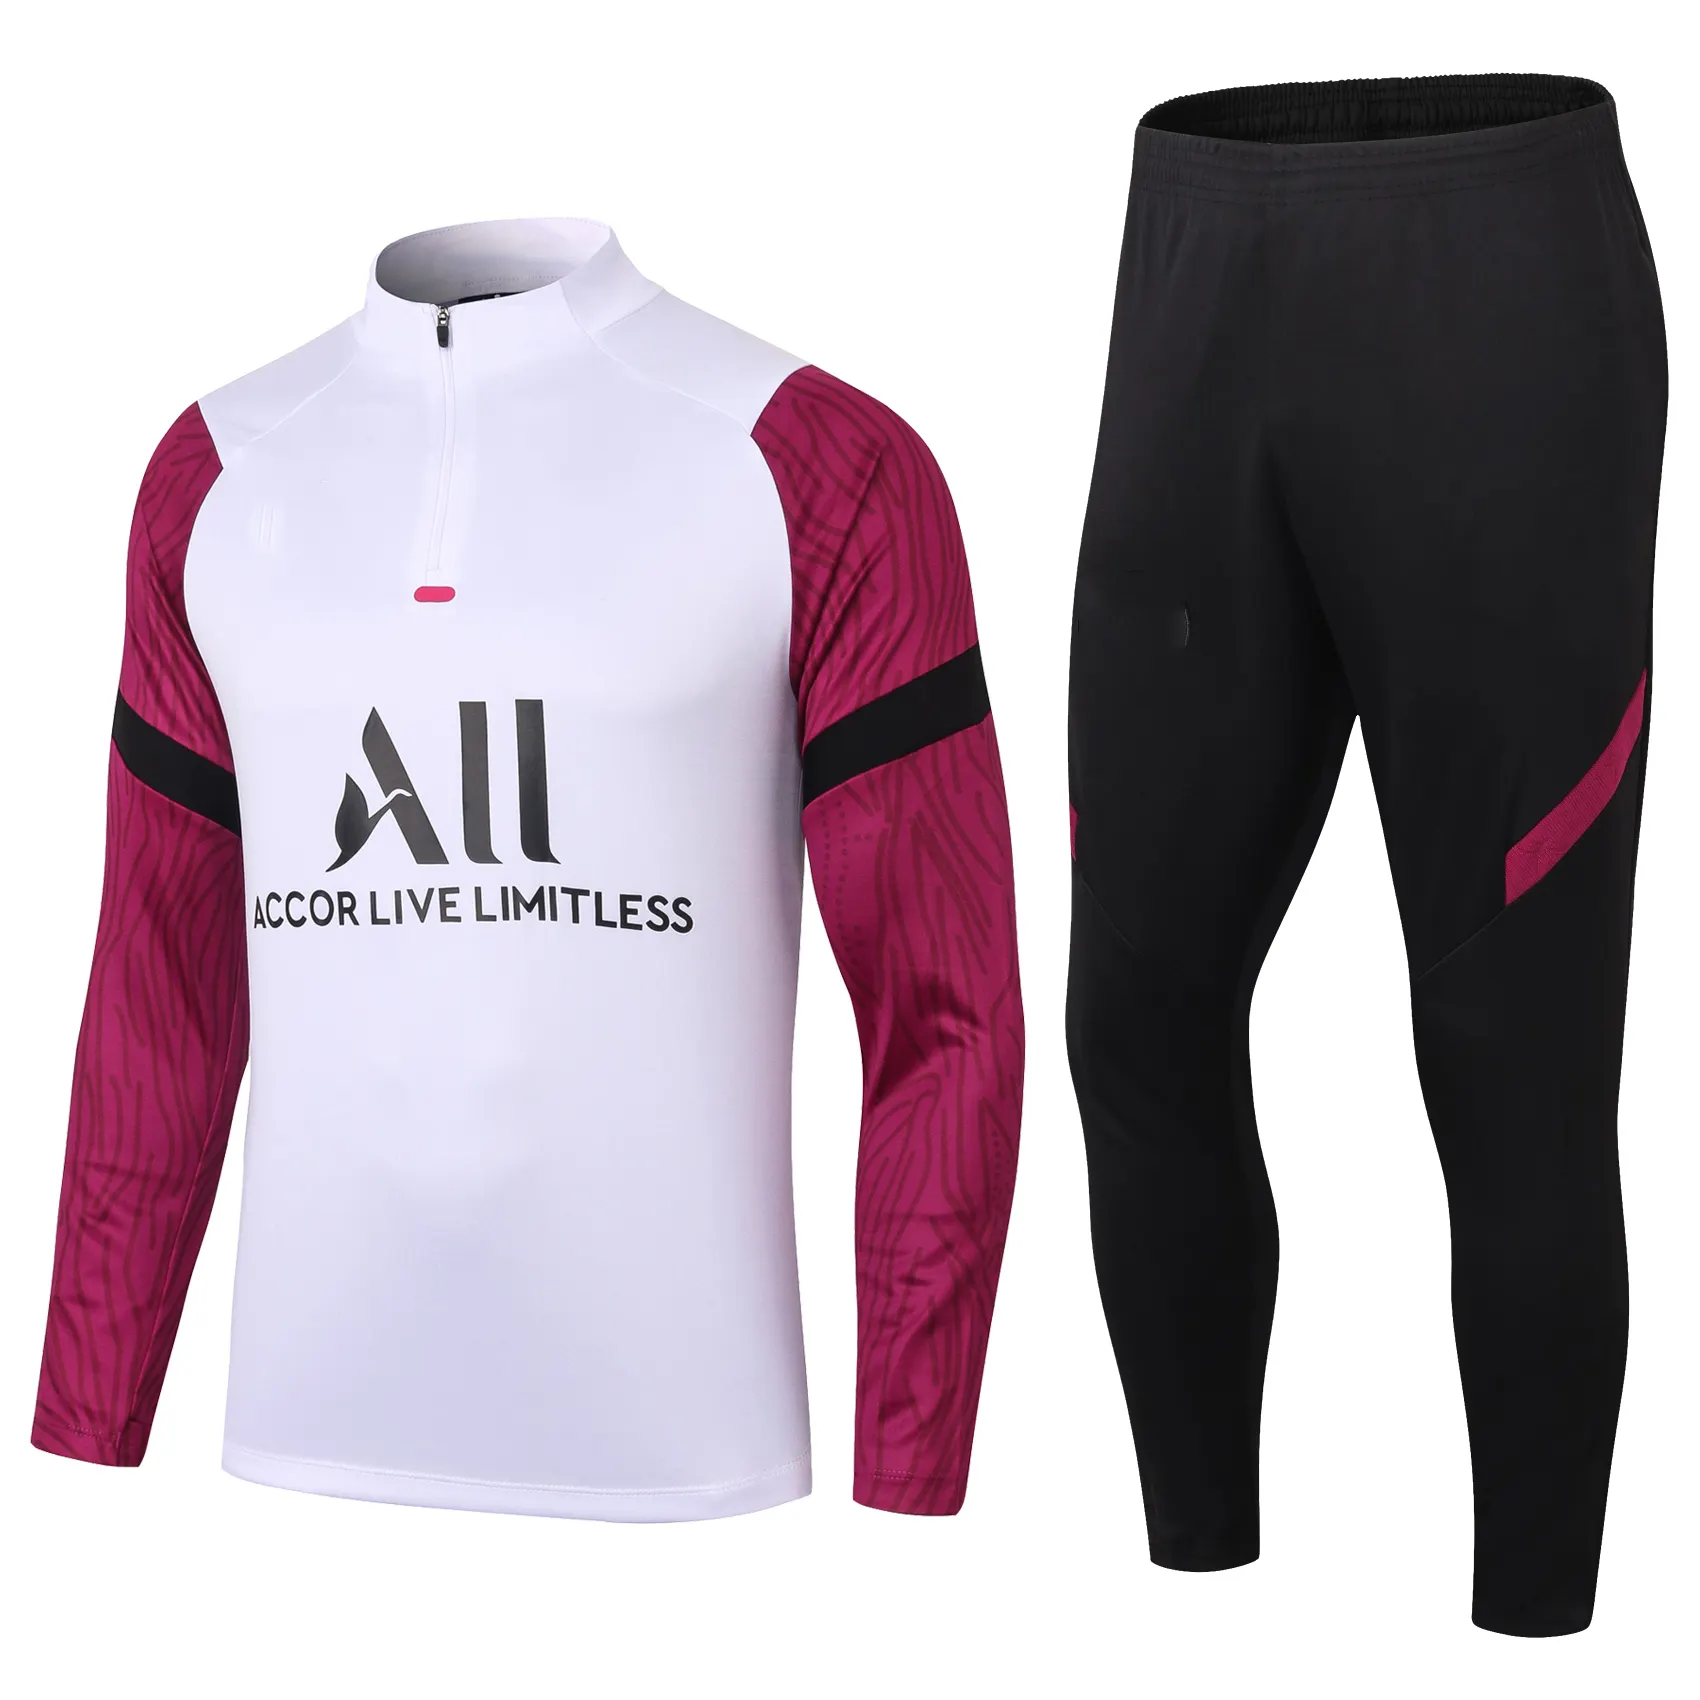 Новый сезон 2021, новый стиль, PSGs, тренировочный спортивный костюм и куртка для футбола